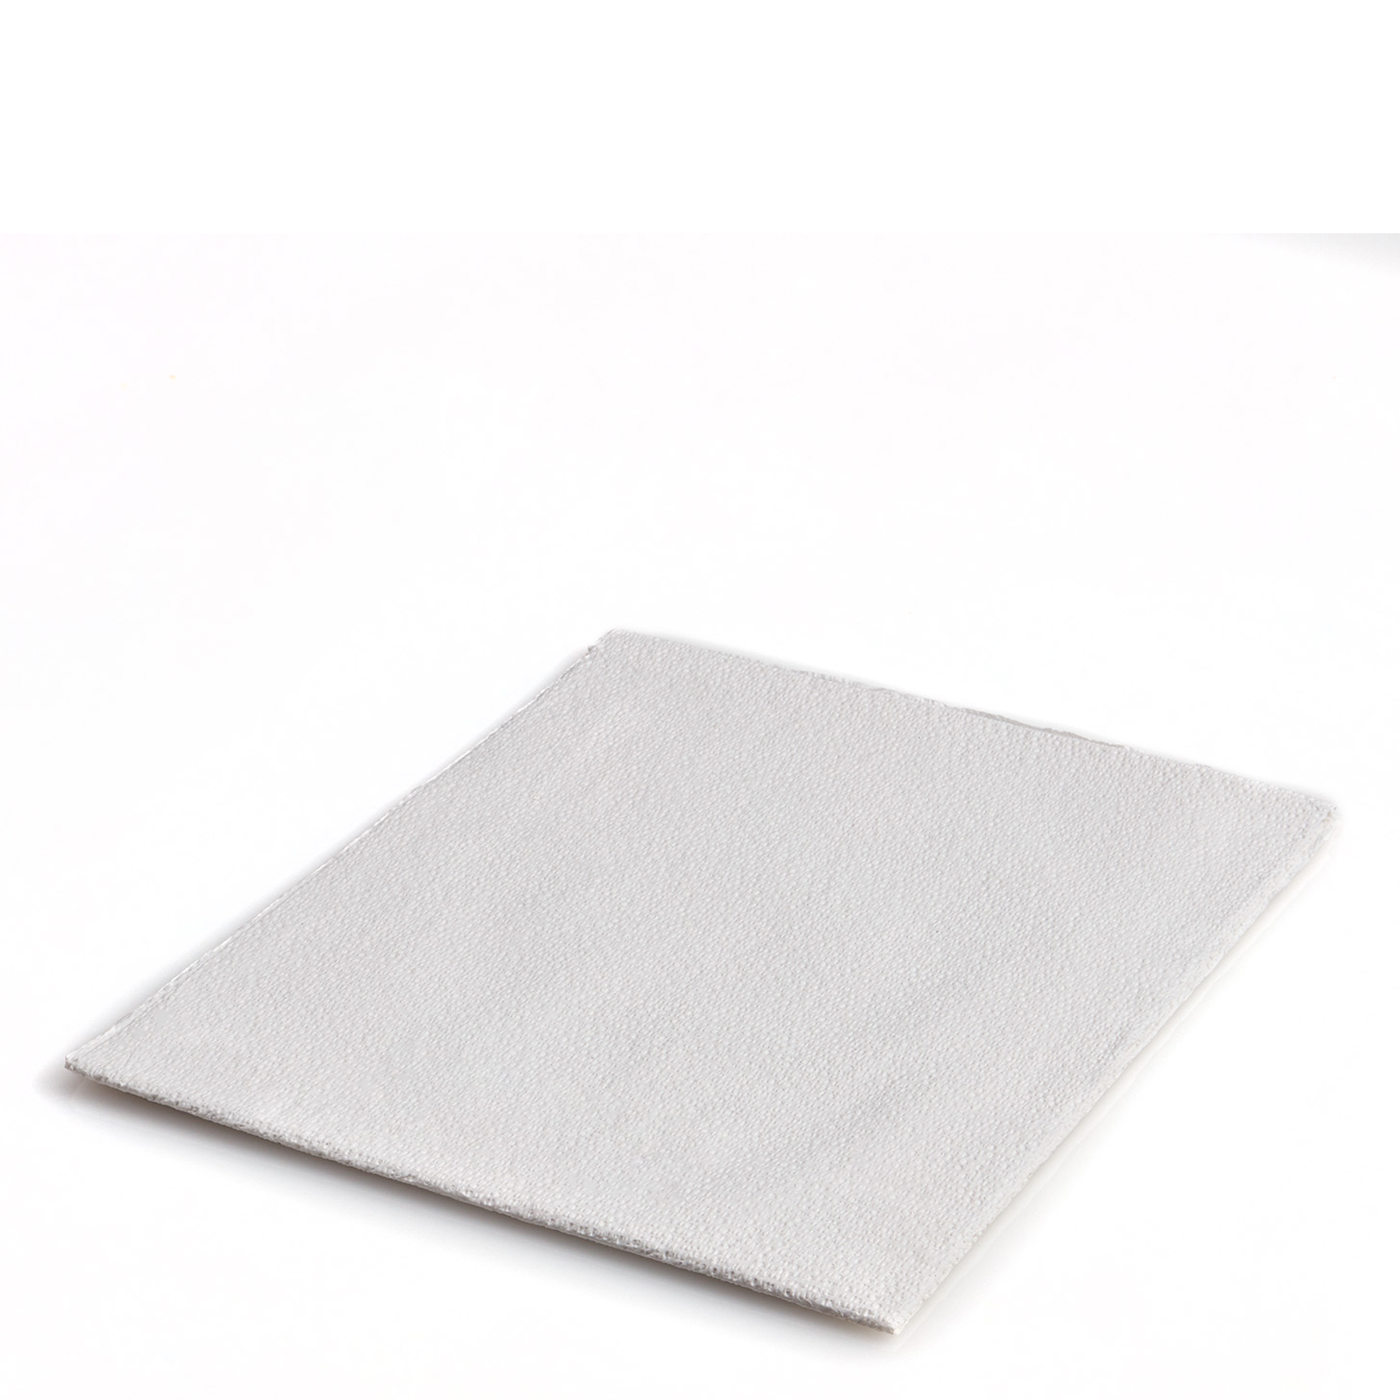 Drape Sheets, 2-Ply Tissue